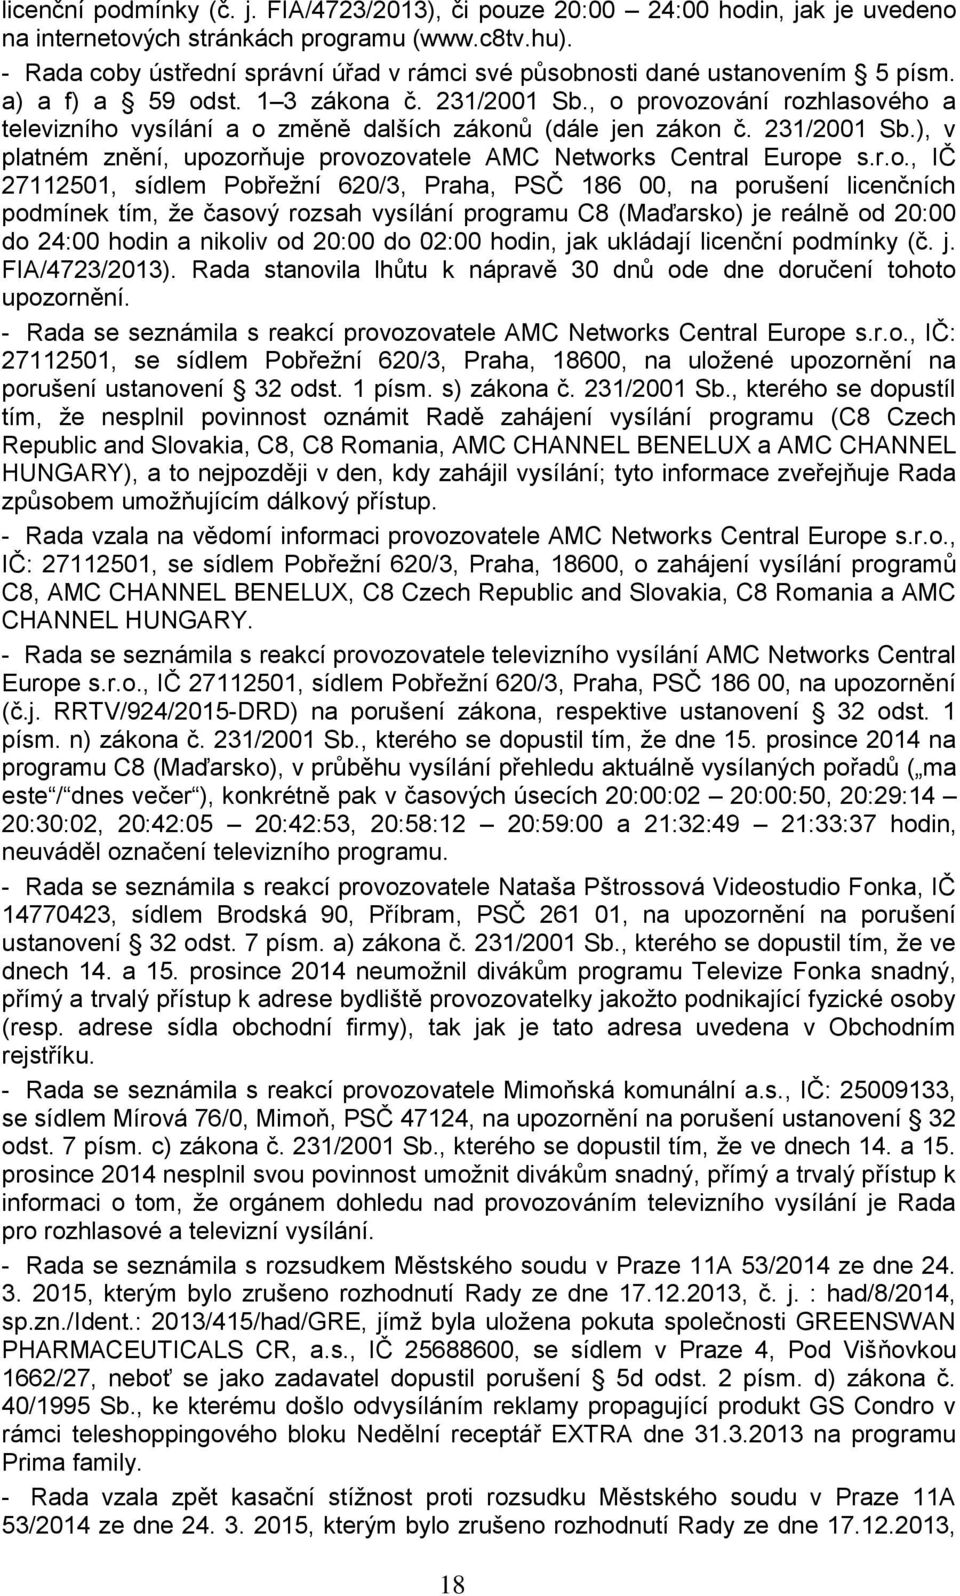 , o provozování rozhlasového a televizního vysílání a o změně dalších zákonů (dále jen zákon č. 231/2001 Sb.), v platném znění, upozorňuje provozovatele AMC Networks Central Europe s.r.o., IČ